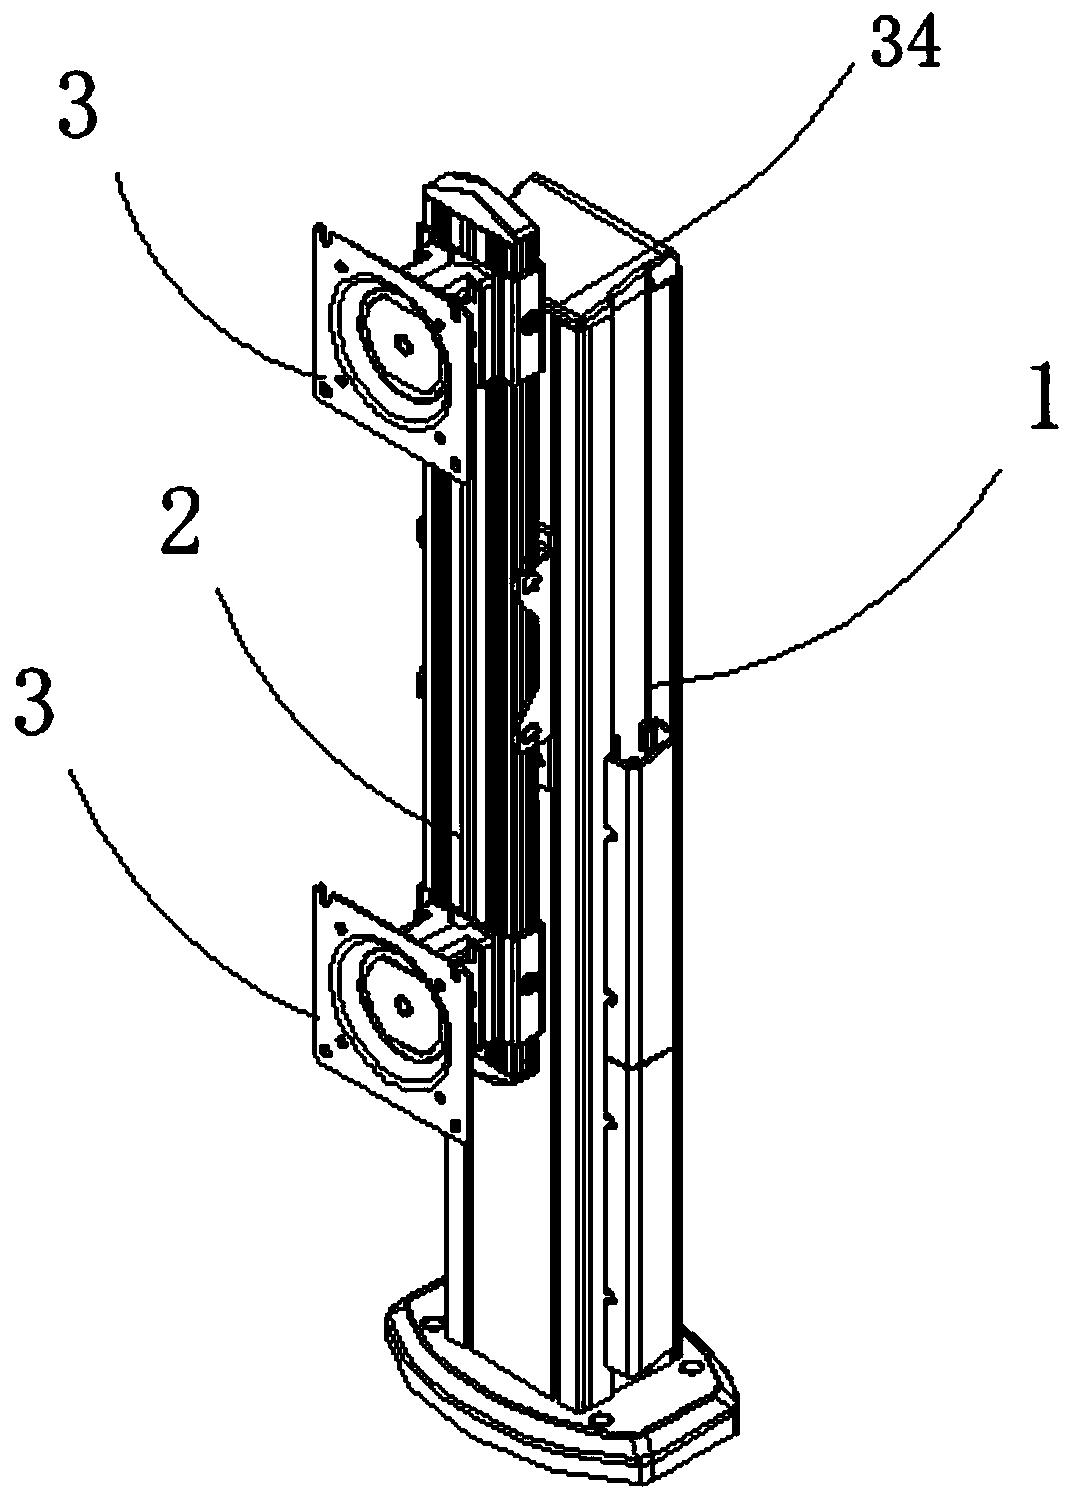 Display screen splicing mechanism